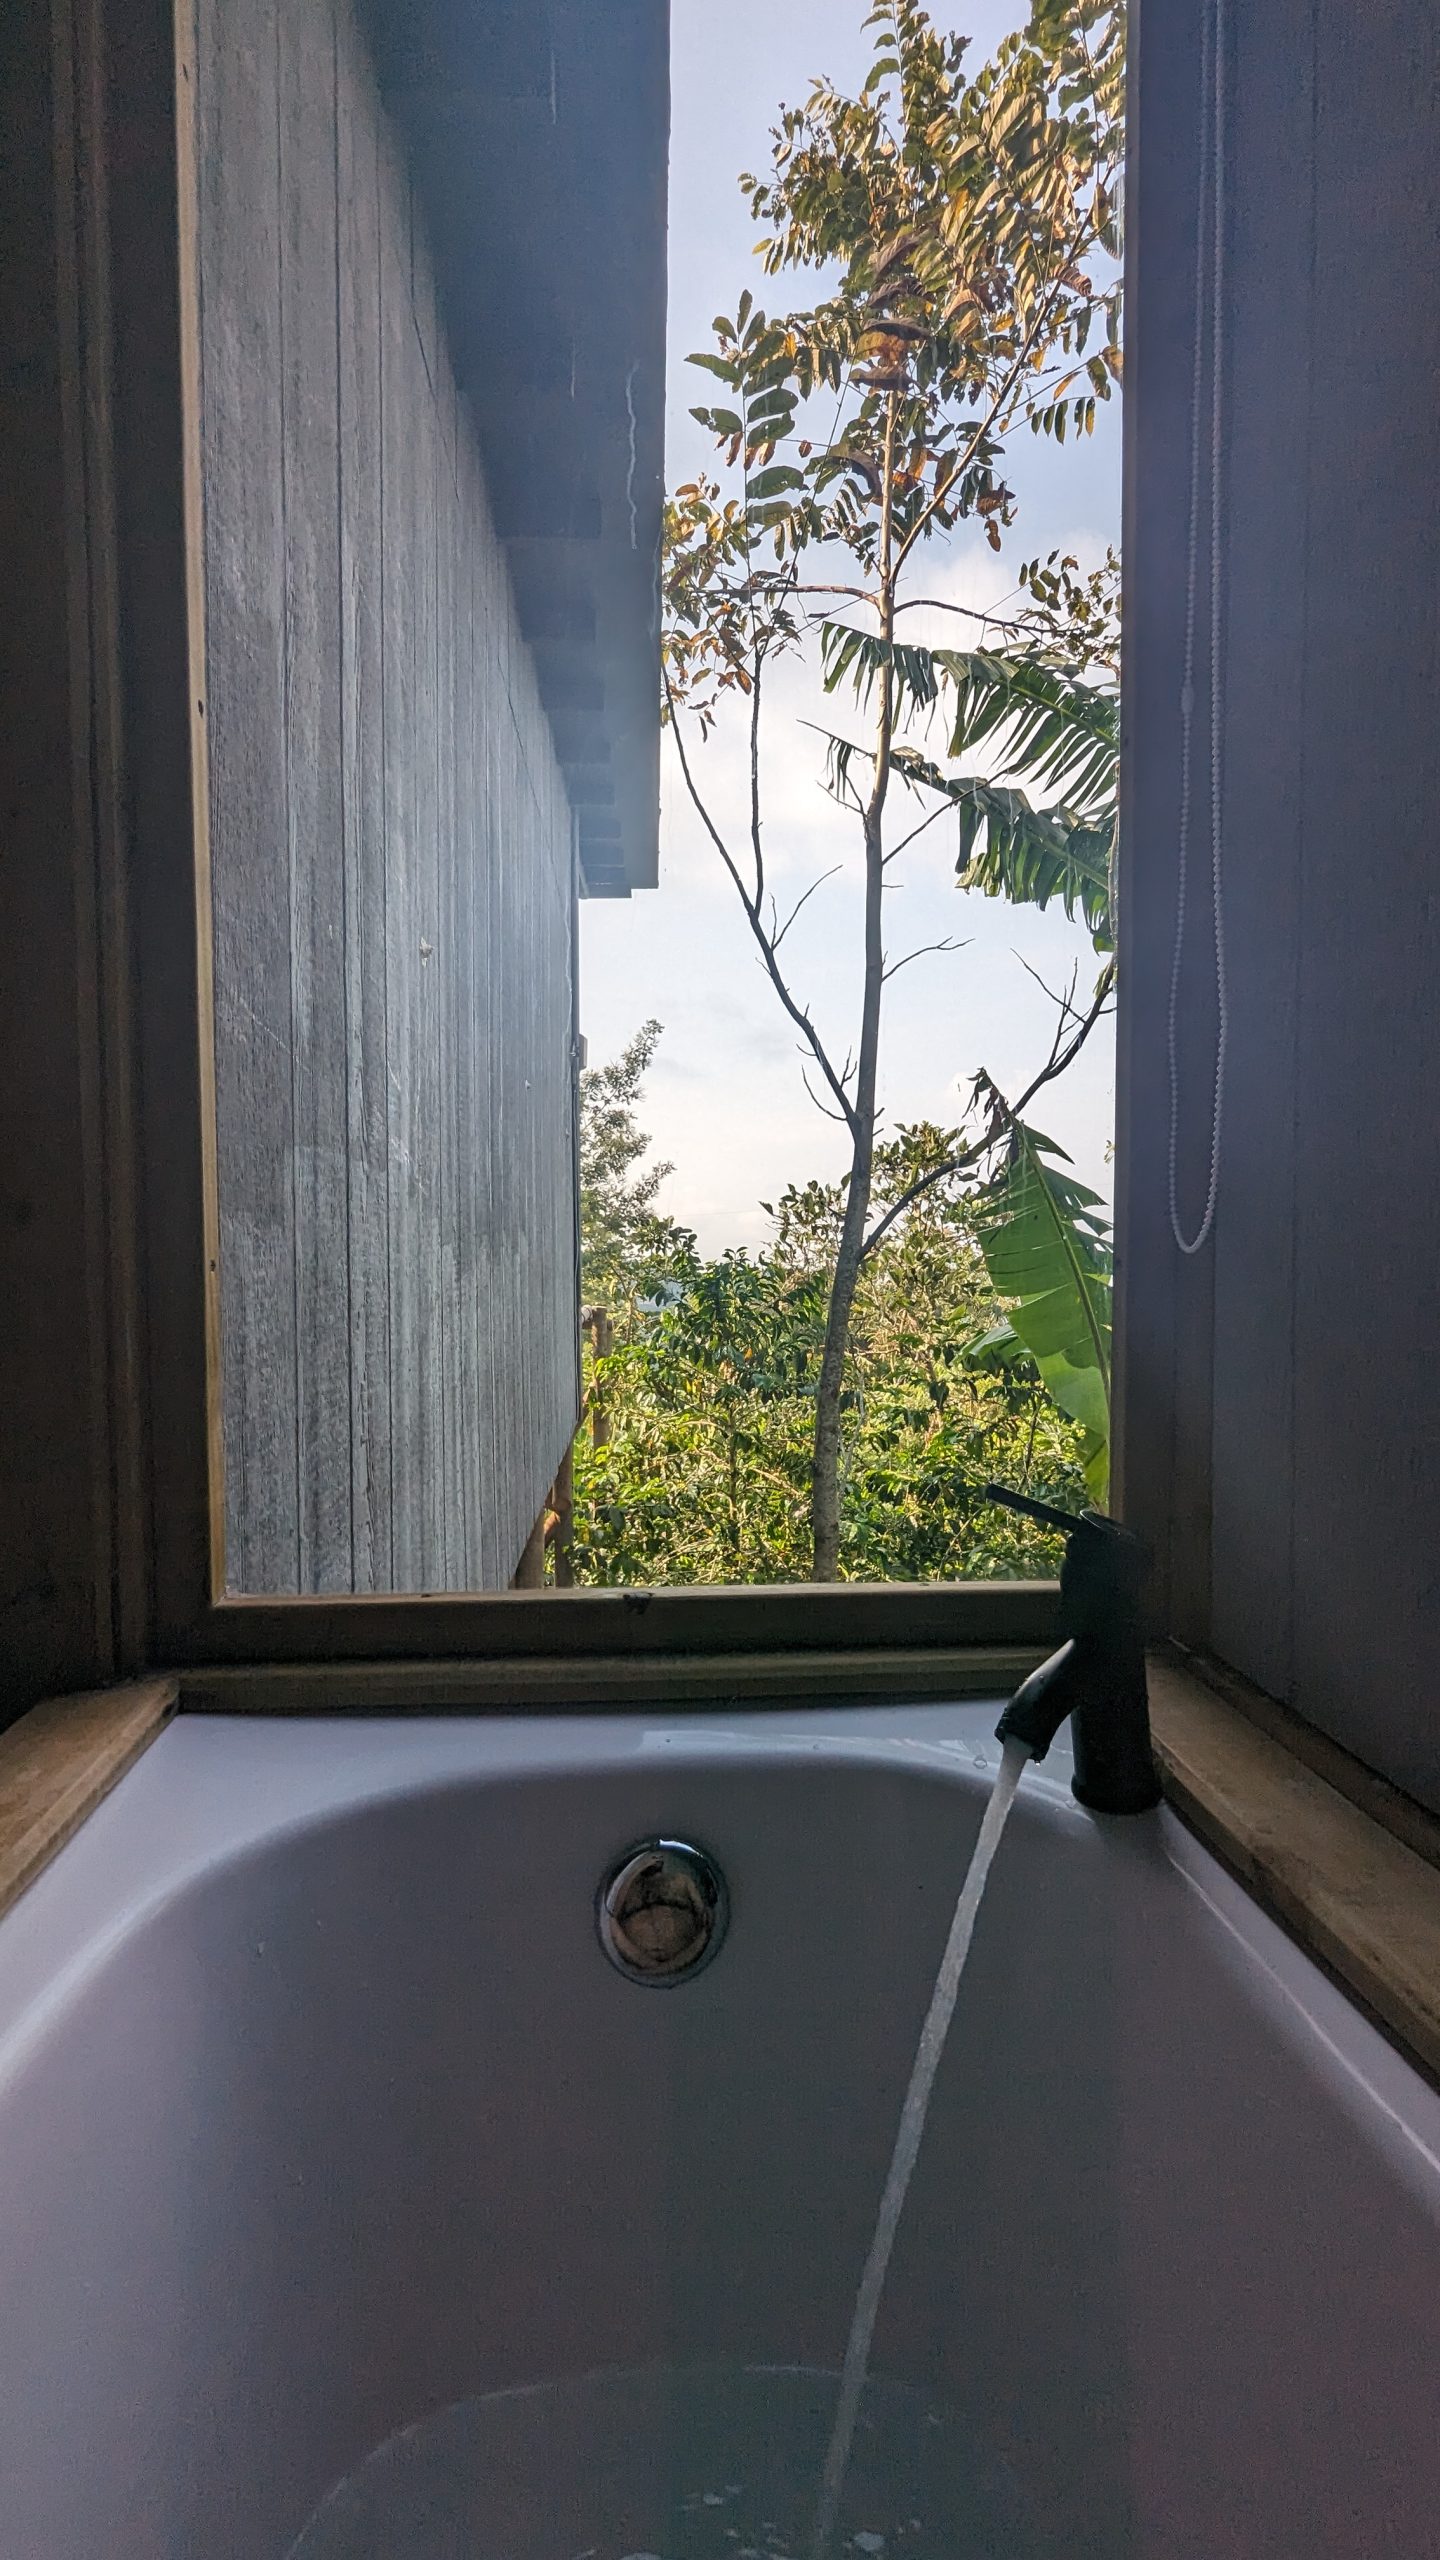 Running bathtub overlooking coffee trees